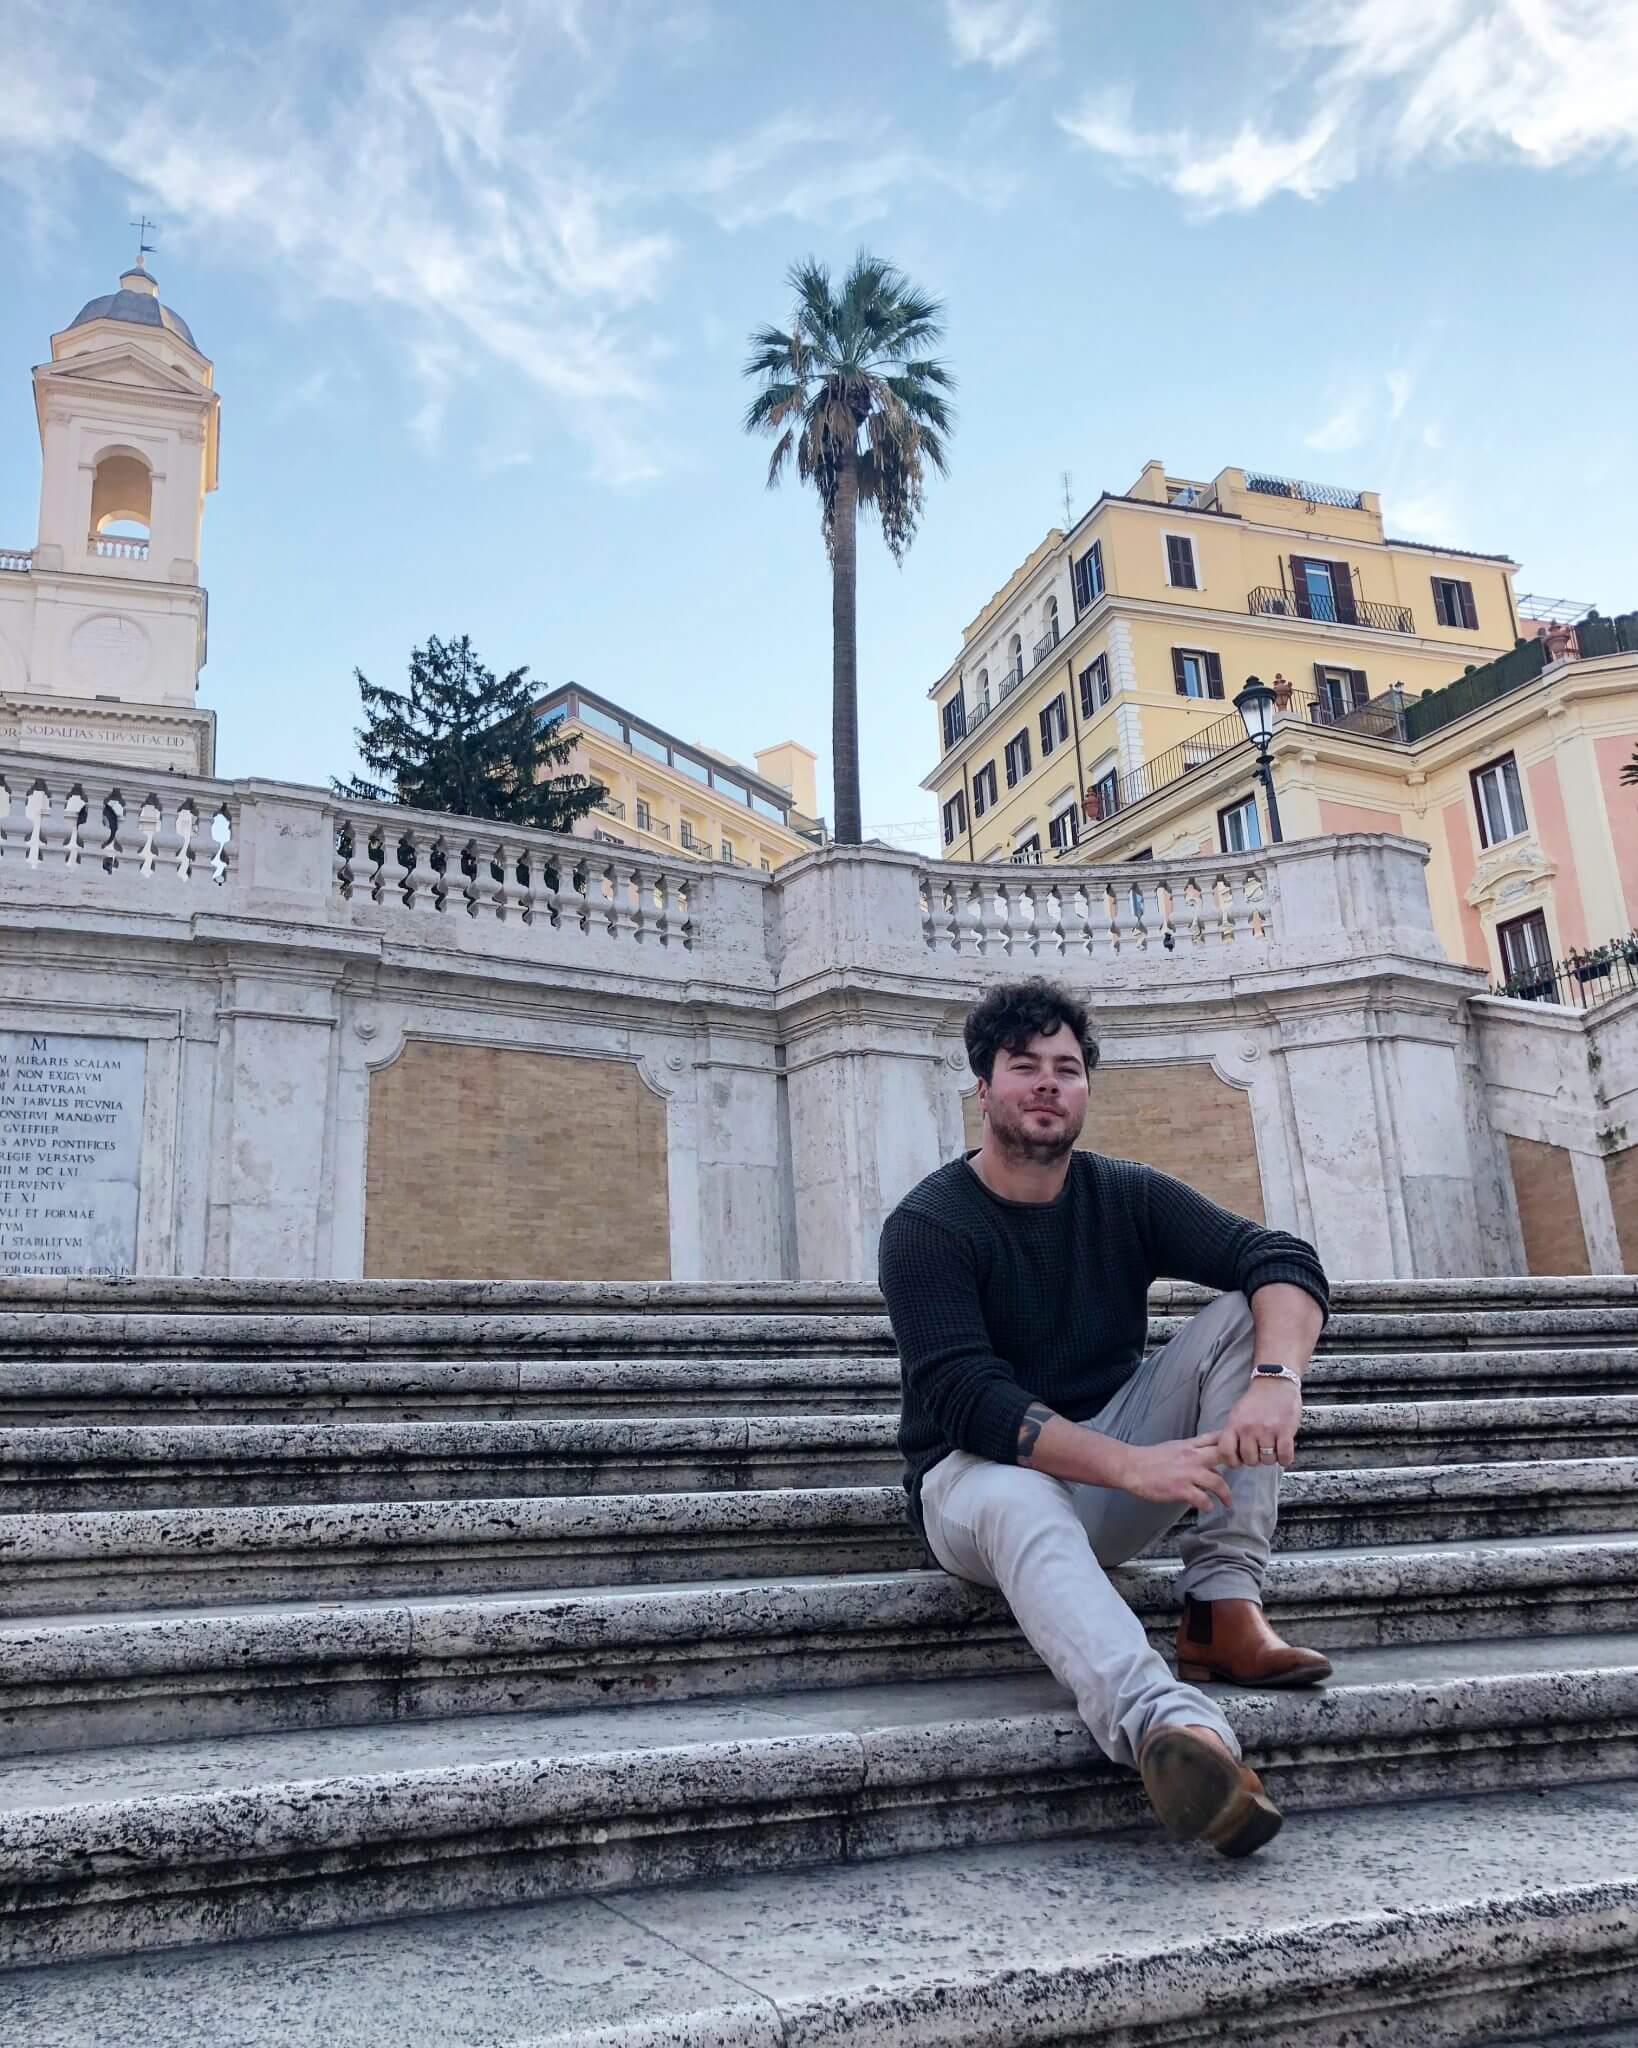 Spanish Steps - Piazza di Spagna Piazza Trinita dei Monti - Travel Explore Rome Italy